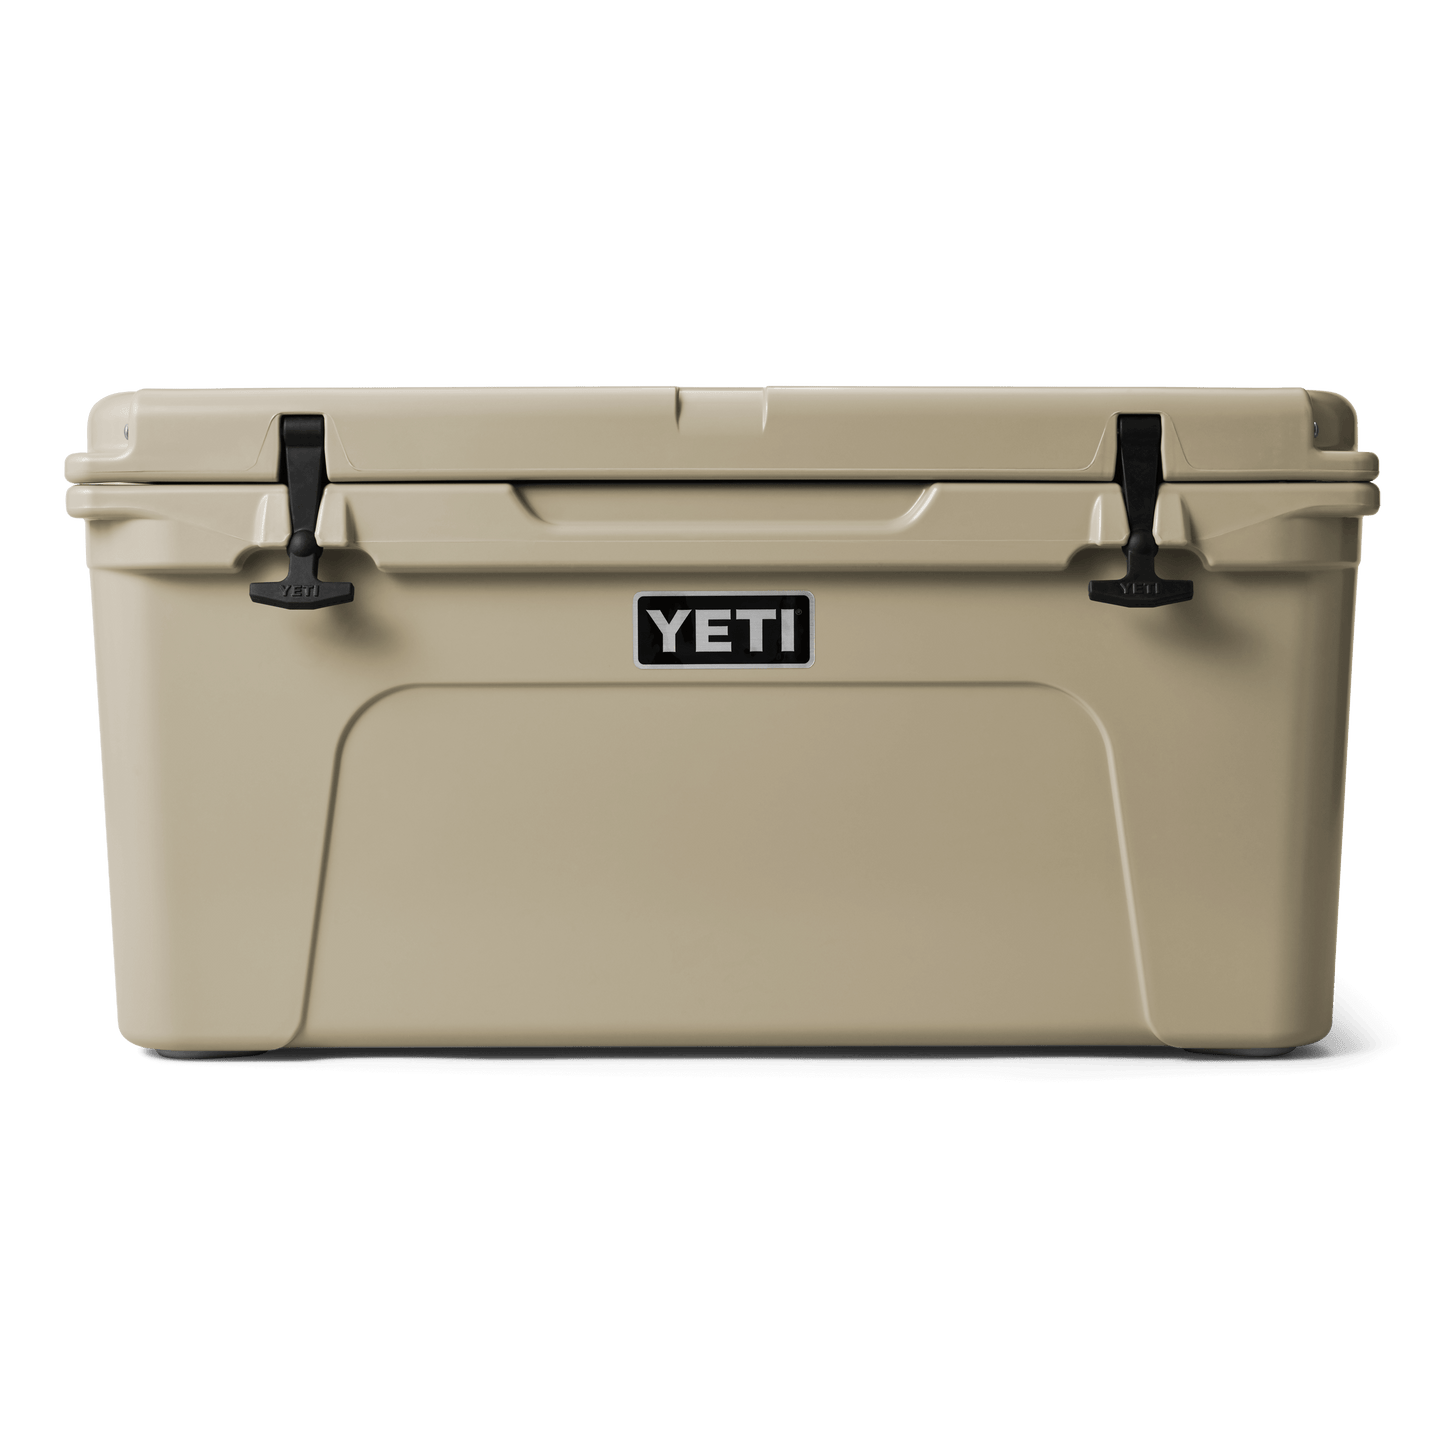 YETI Tundra® 65 Cool Box Tan